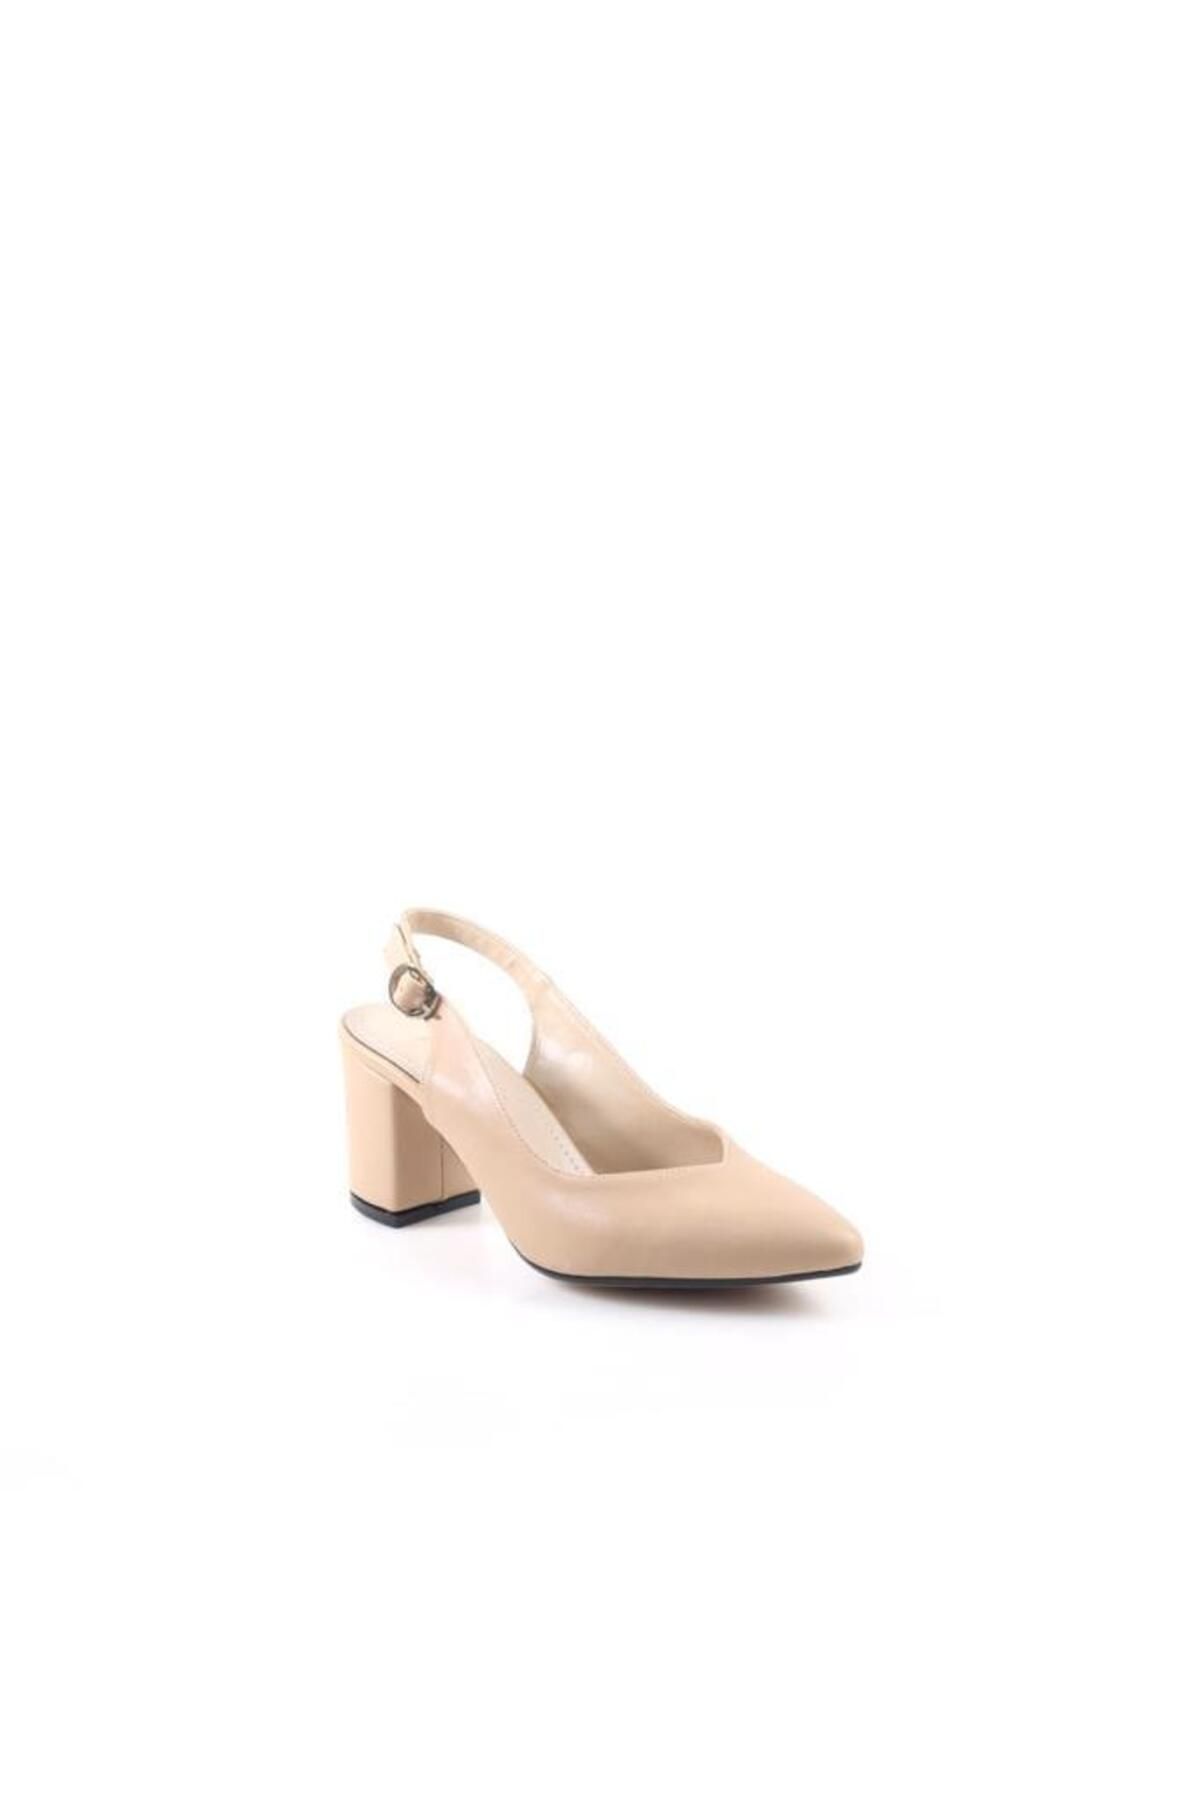 Pierre Cardin 51204 6 Cm Kadın Topuklu Stiletto Ayakkabı